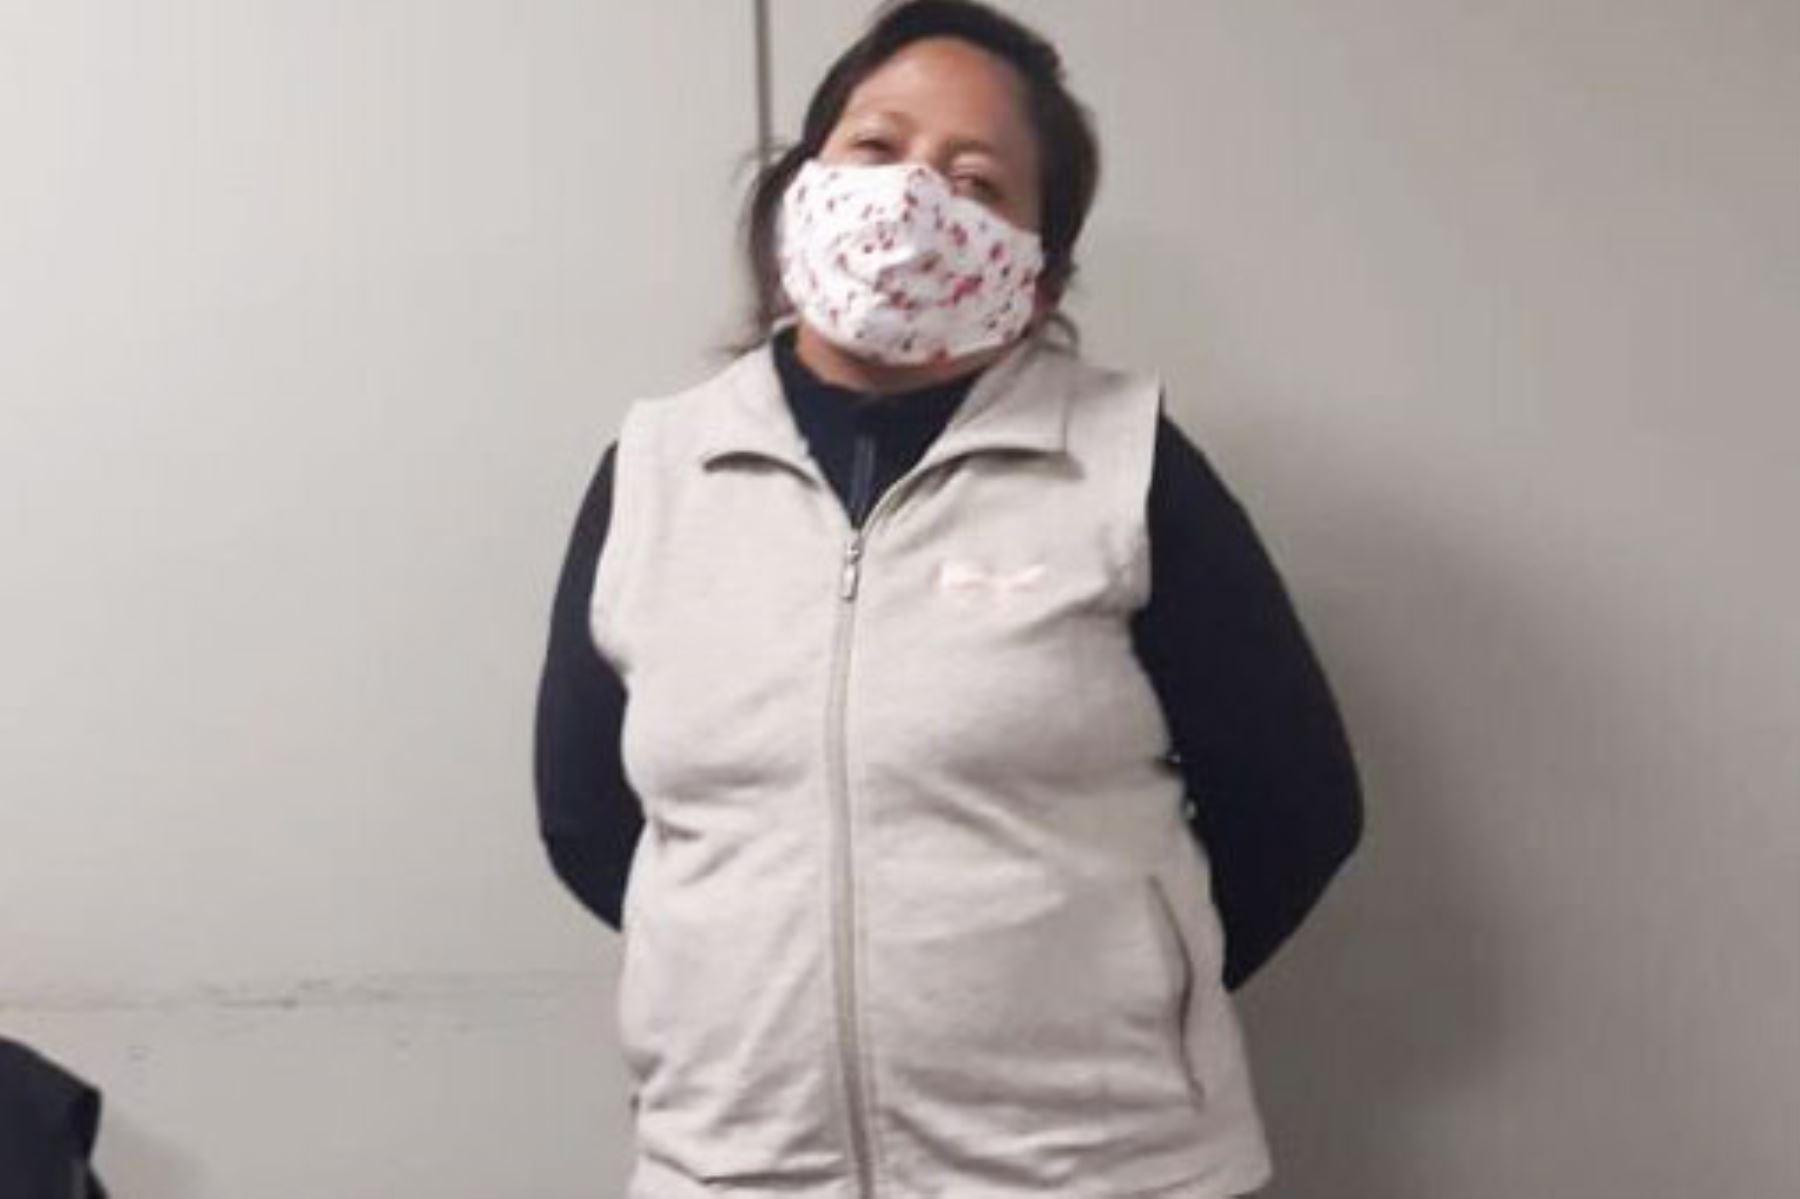 La Policía Nacional informó que esta mujer fue hallada infraganti comercializando ivermectina sustraída del Colegio Médico de Junín. Foto: ANDINA/Difusión